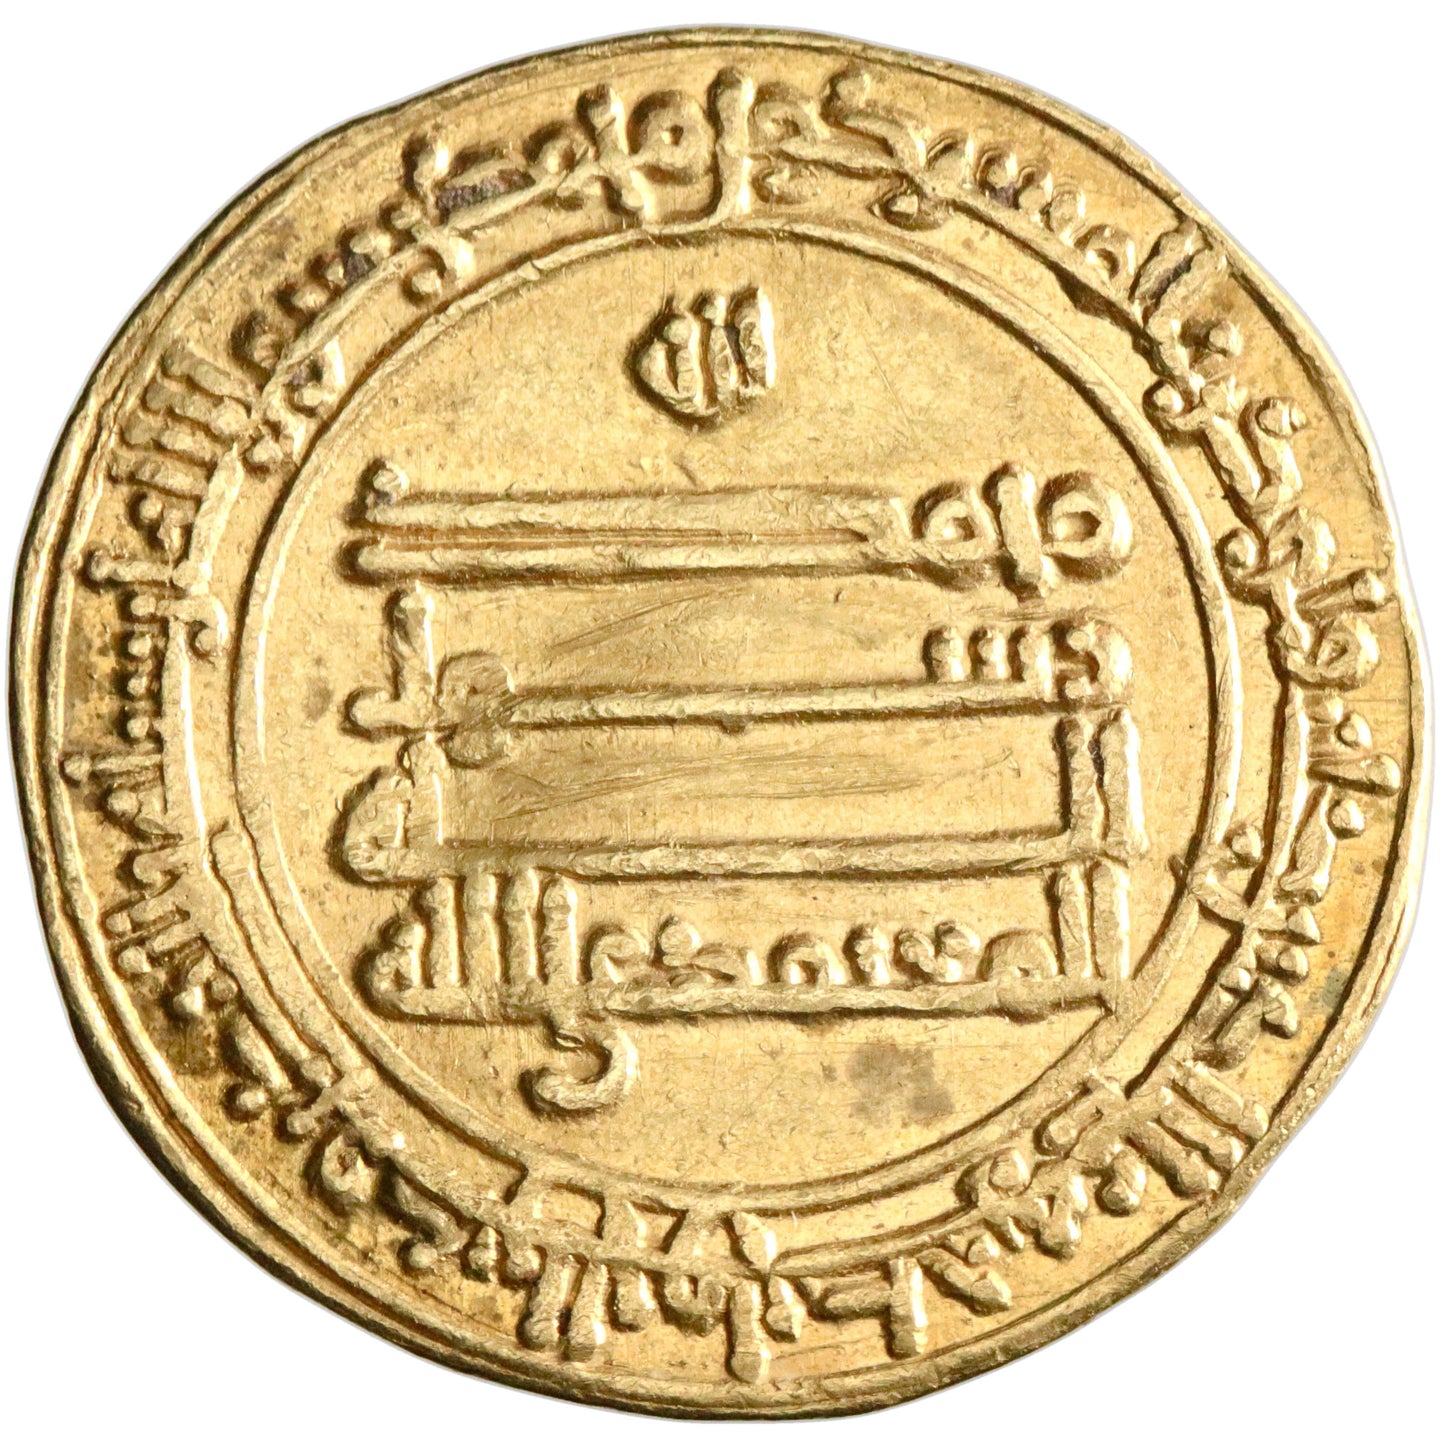 Abbasid, al-Mu'tamid, gold dinar, Madinat al-Salam (Baghdad) mint, AH 263, citing al-Muwaffaq